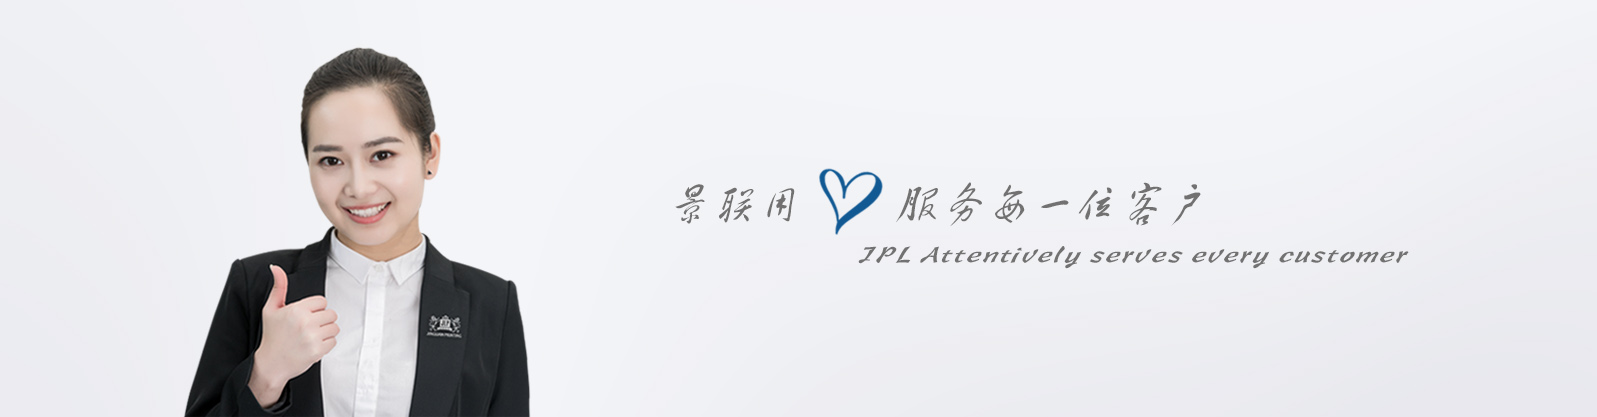 手提袋娱乐718官网|中国有限公司/环保袋娱乐718官网|中国有限公司(图10)